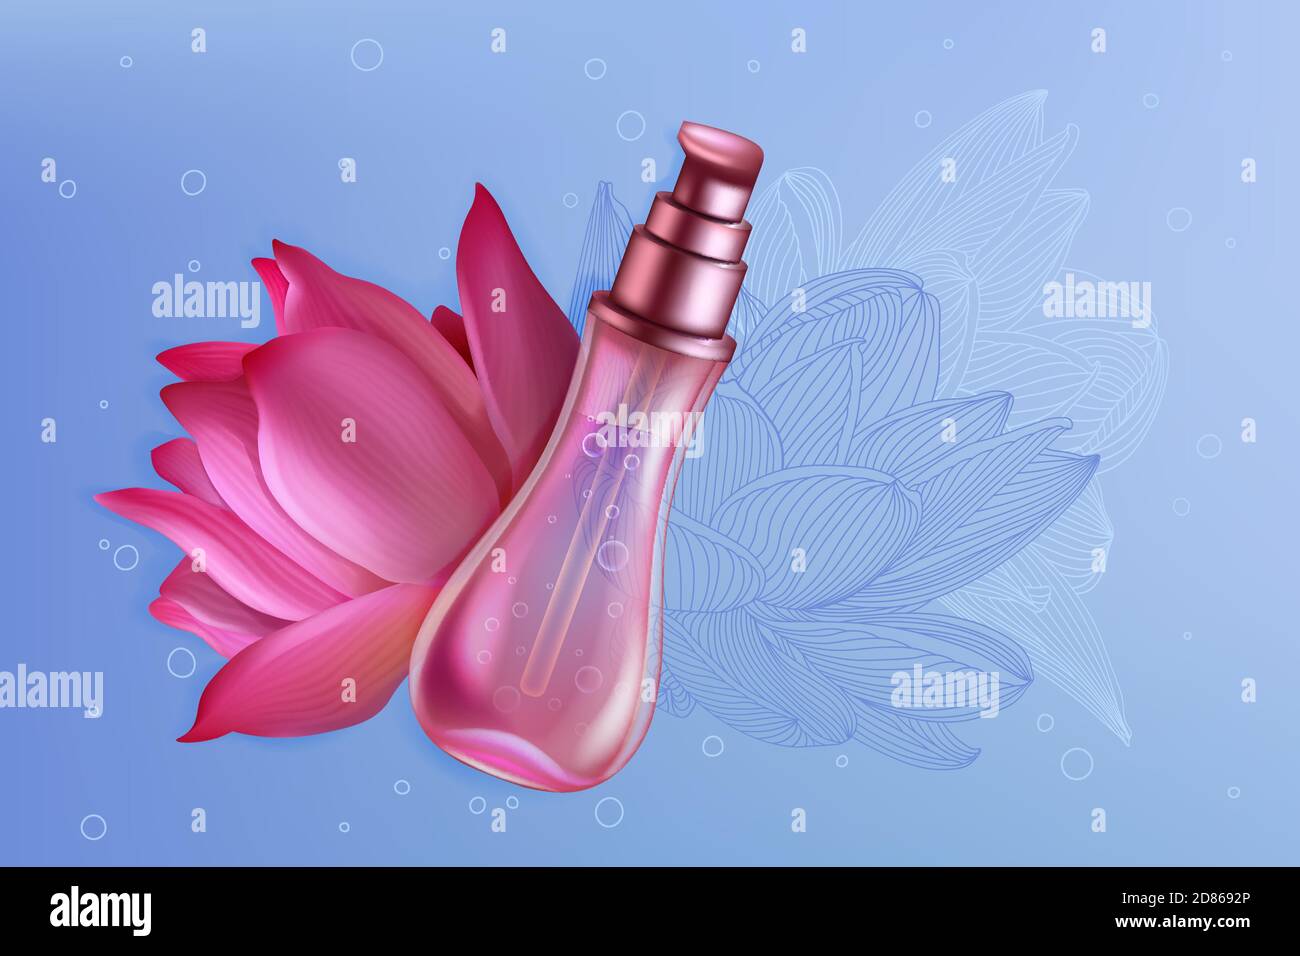 Luxus rosa Lotuslilie Parfüm Produktpaket Vektor Illustration. Realistische 3d-Design für Broschüre Katalog oder Magazin mit Parfüm Verpackung Sprühflasche und schöne natürliche Lotusblume Hintergrund Stock Vektor